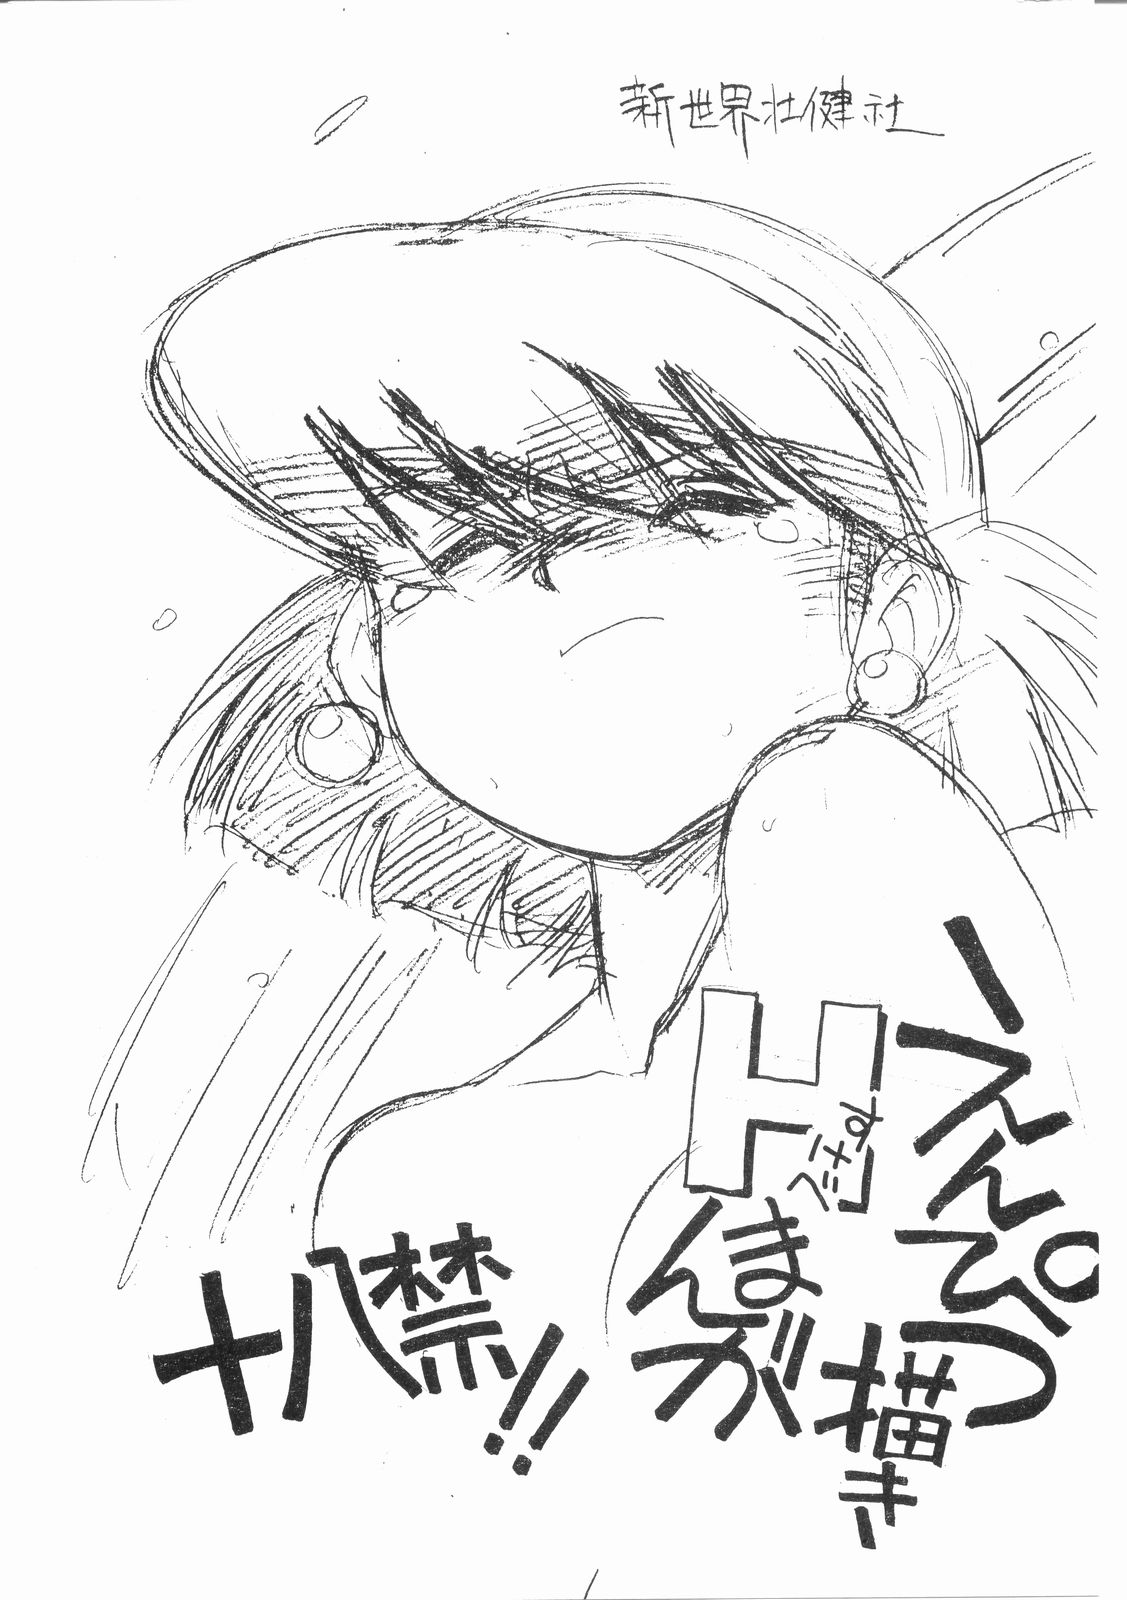 [Shinsekai Soukensha (Asari Yoshitoo)] Enpitsu Egaki H Manga Vol. 3 (Oira Uchuu no Tankoufu, Yamato Takeru) page 1 full